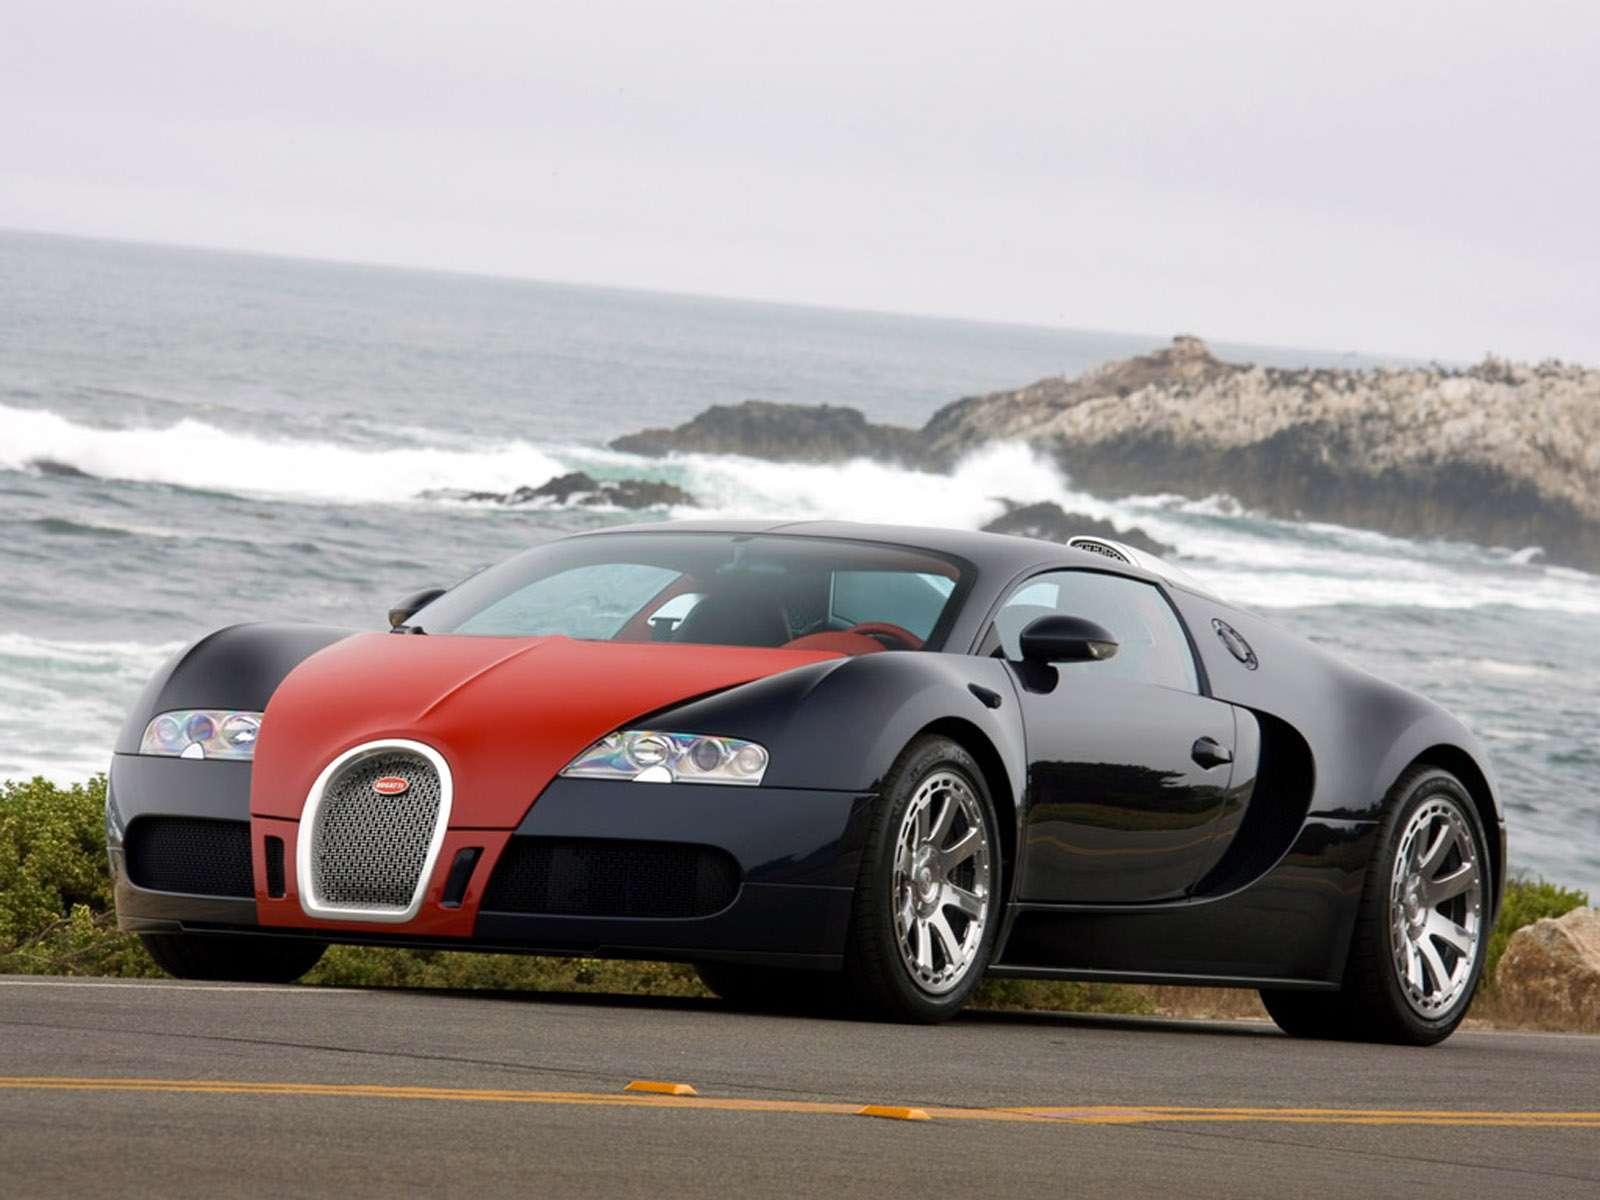 Bugatti 164 Veyron